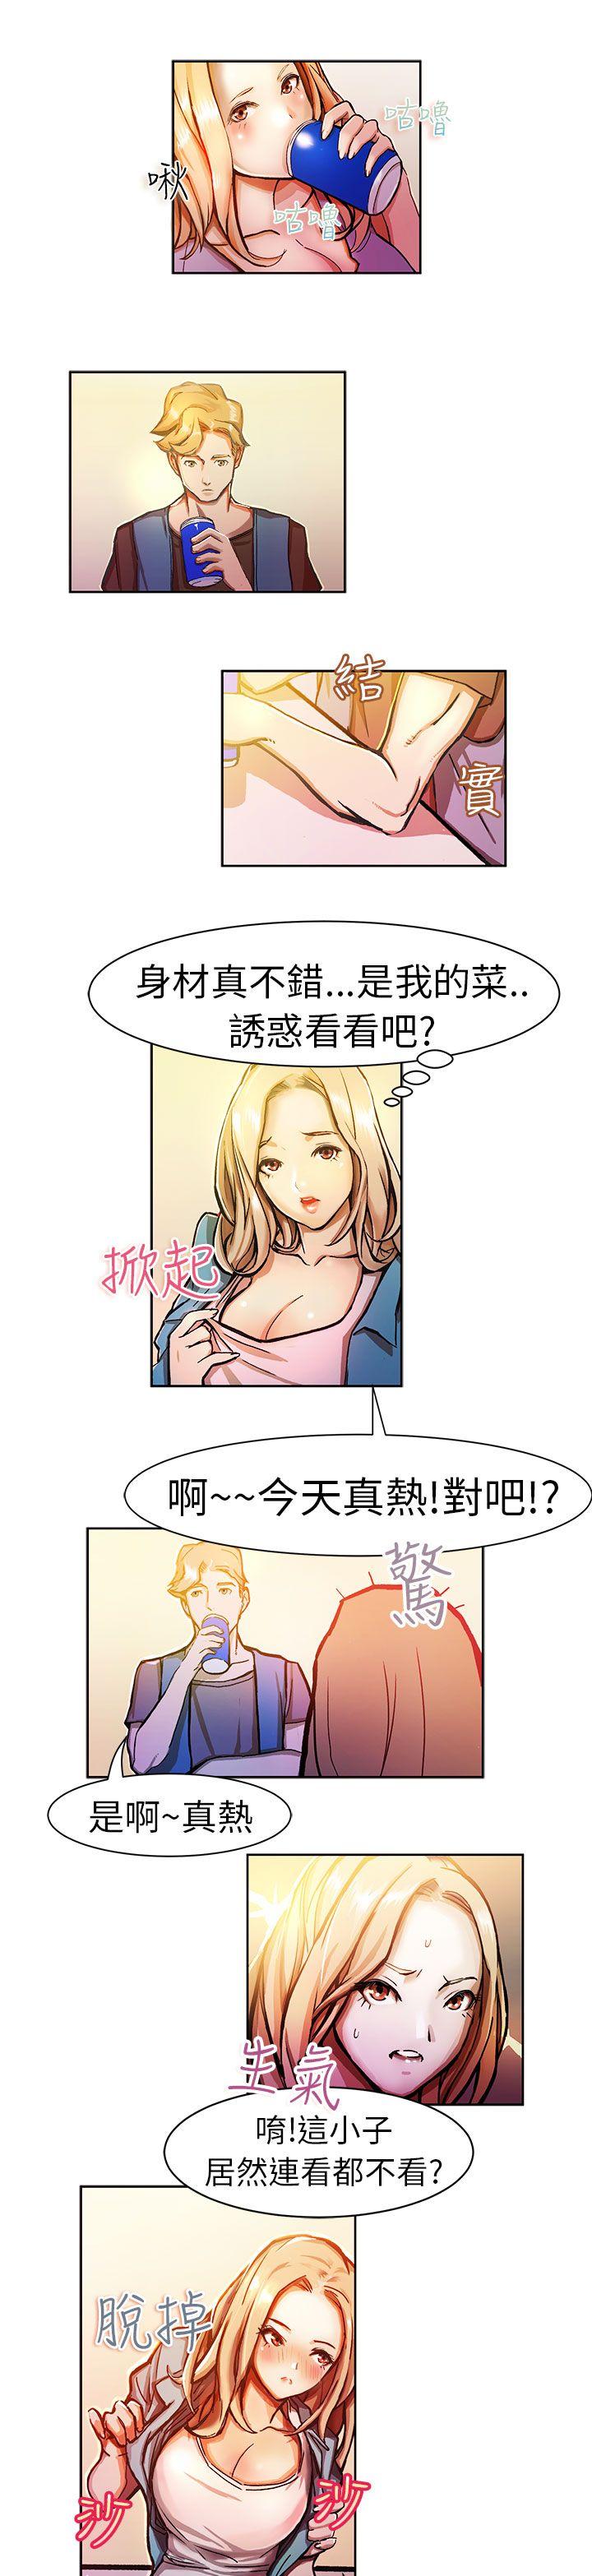 韩国污漫画 派愛達人 叫外卖的女孩(中) 2